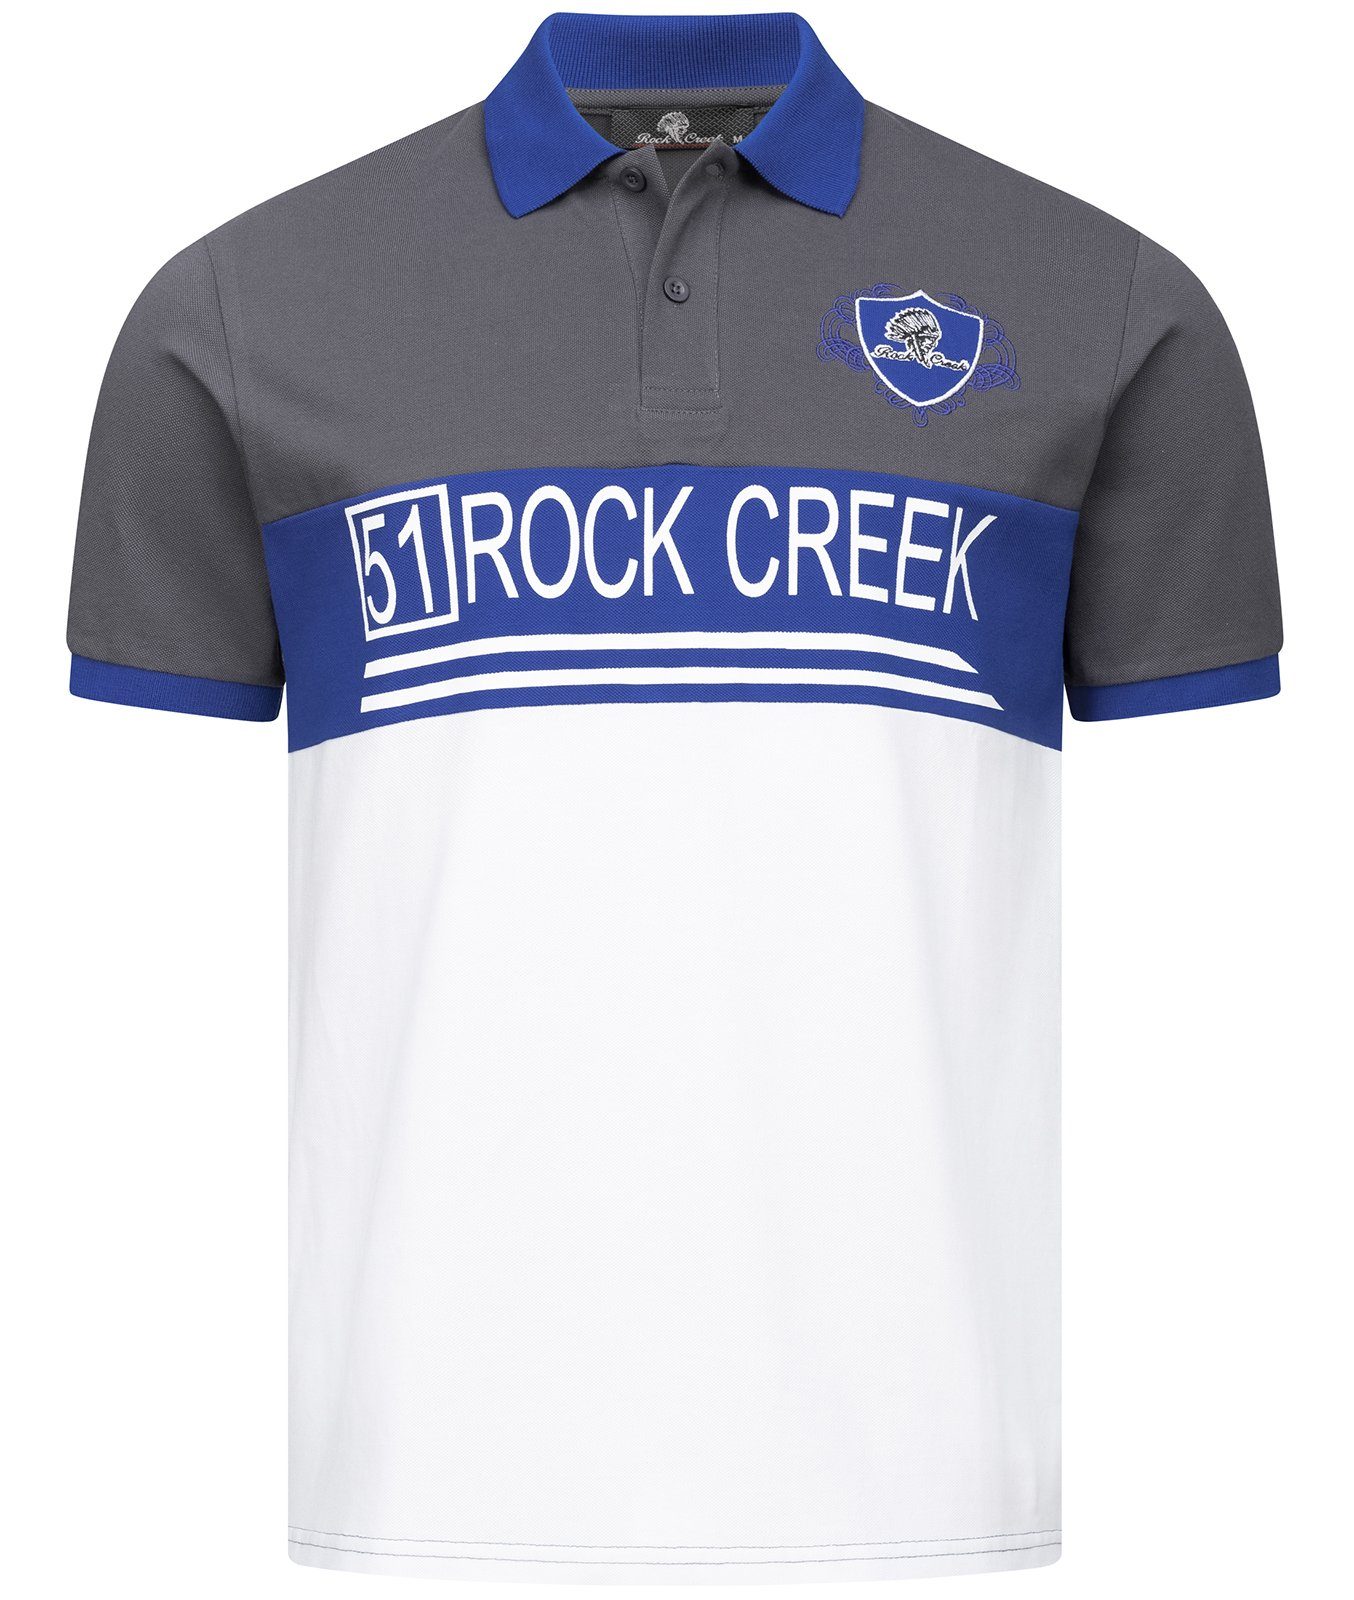 Rock Creek Poloshirt Herren H-306 Dunkelgrau Polokragen T-Shirt mit